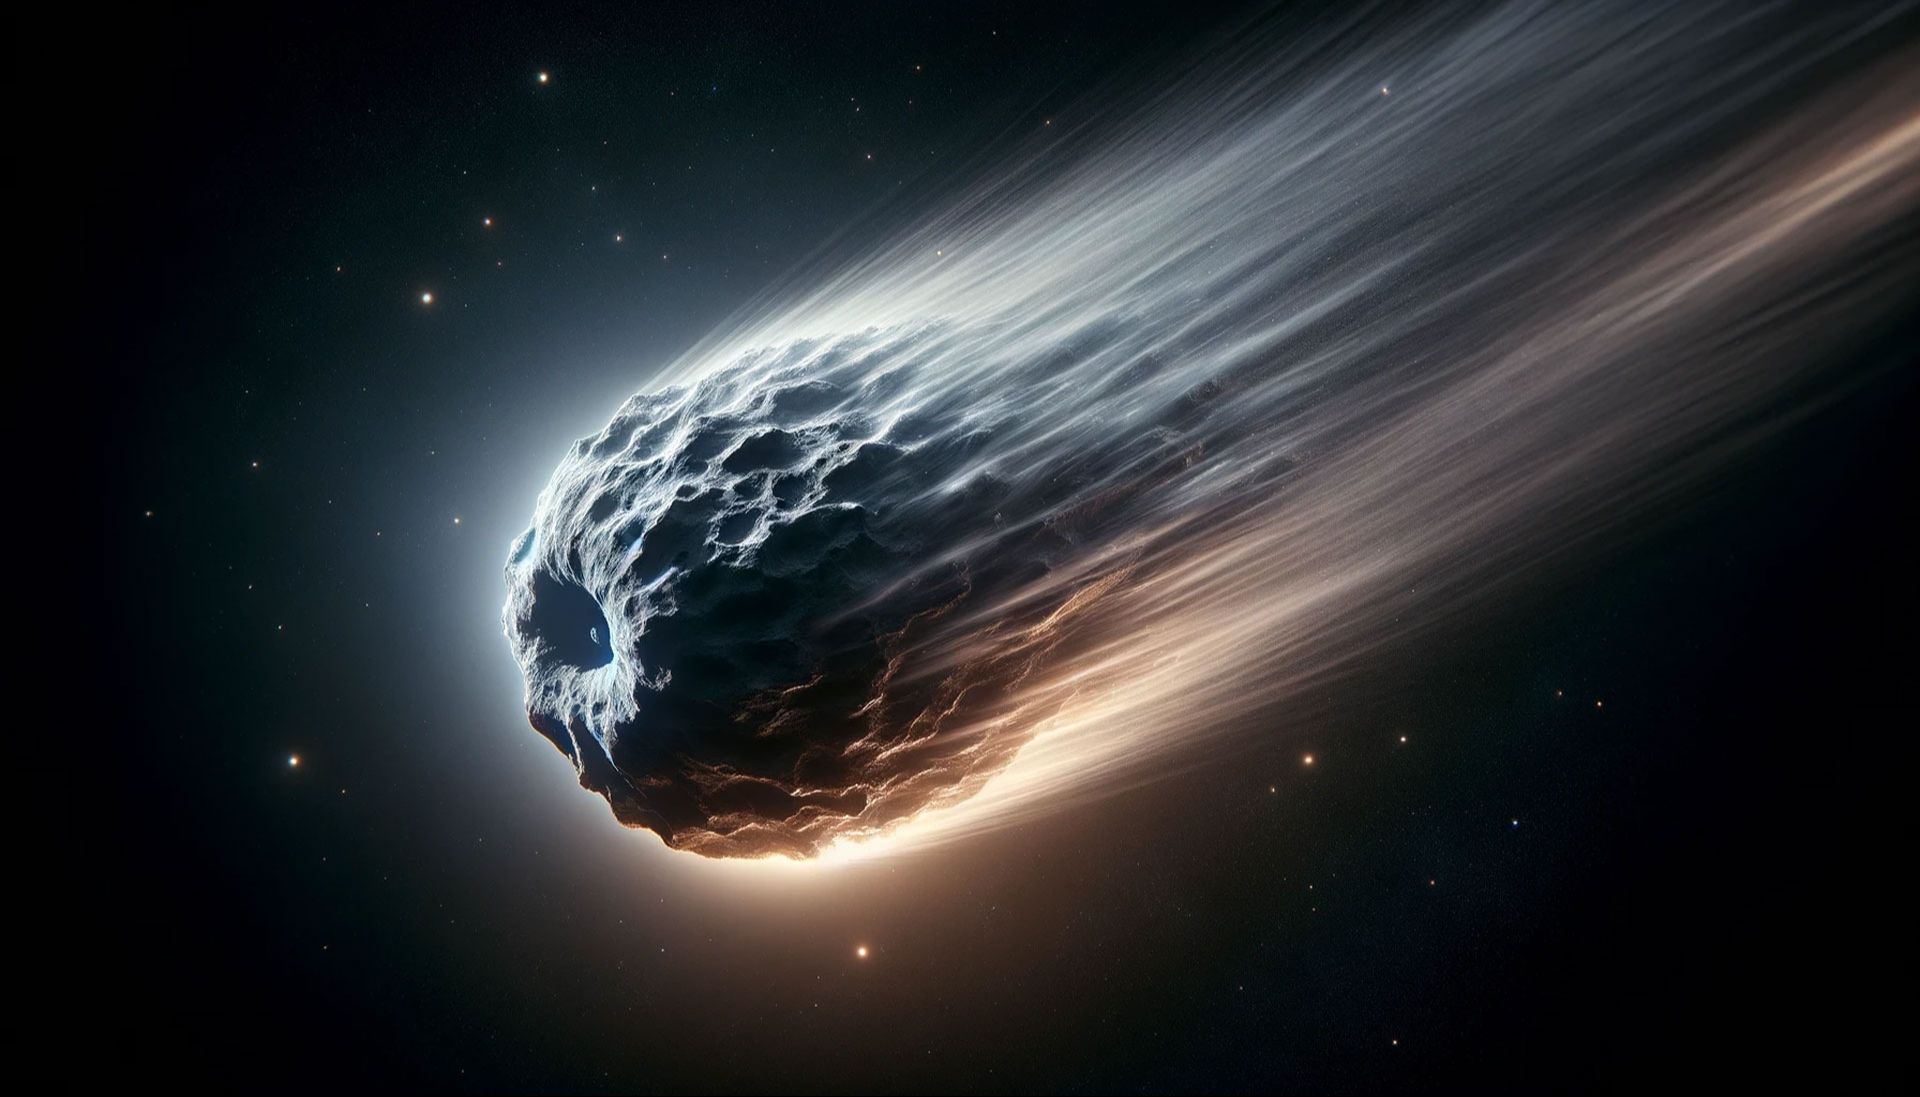 比哈雷彗星更大的彗星4月21日来袭